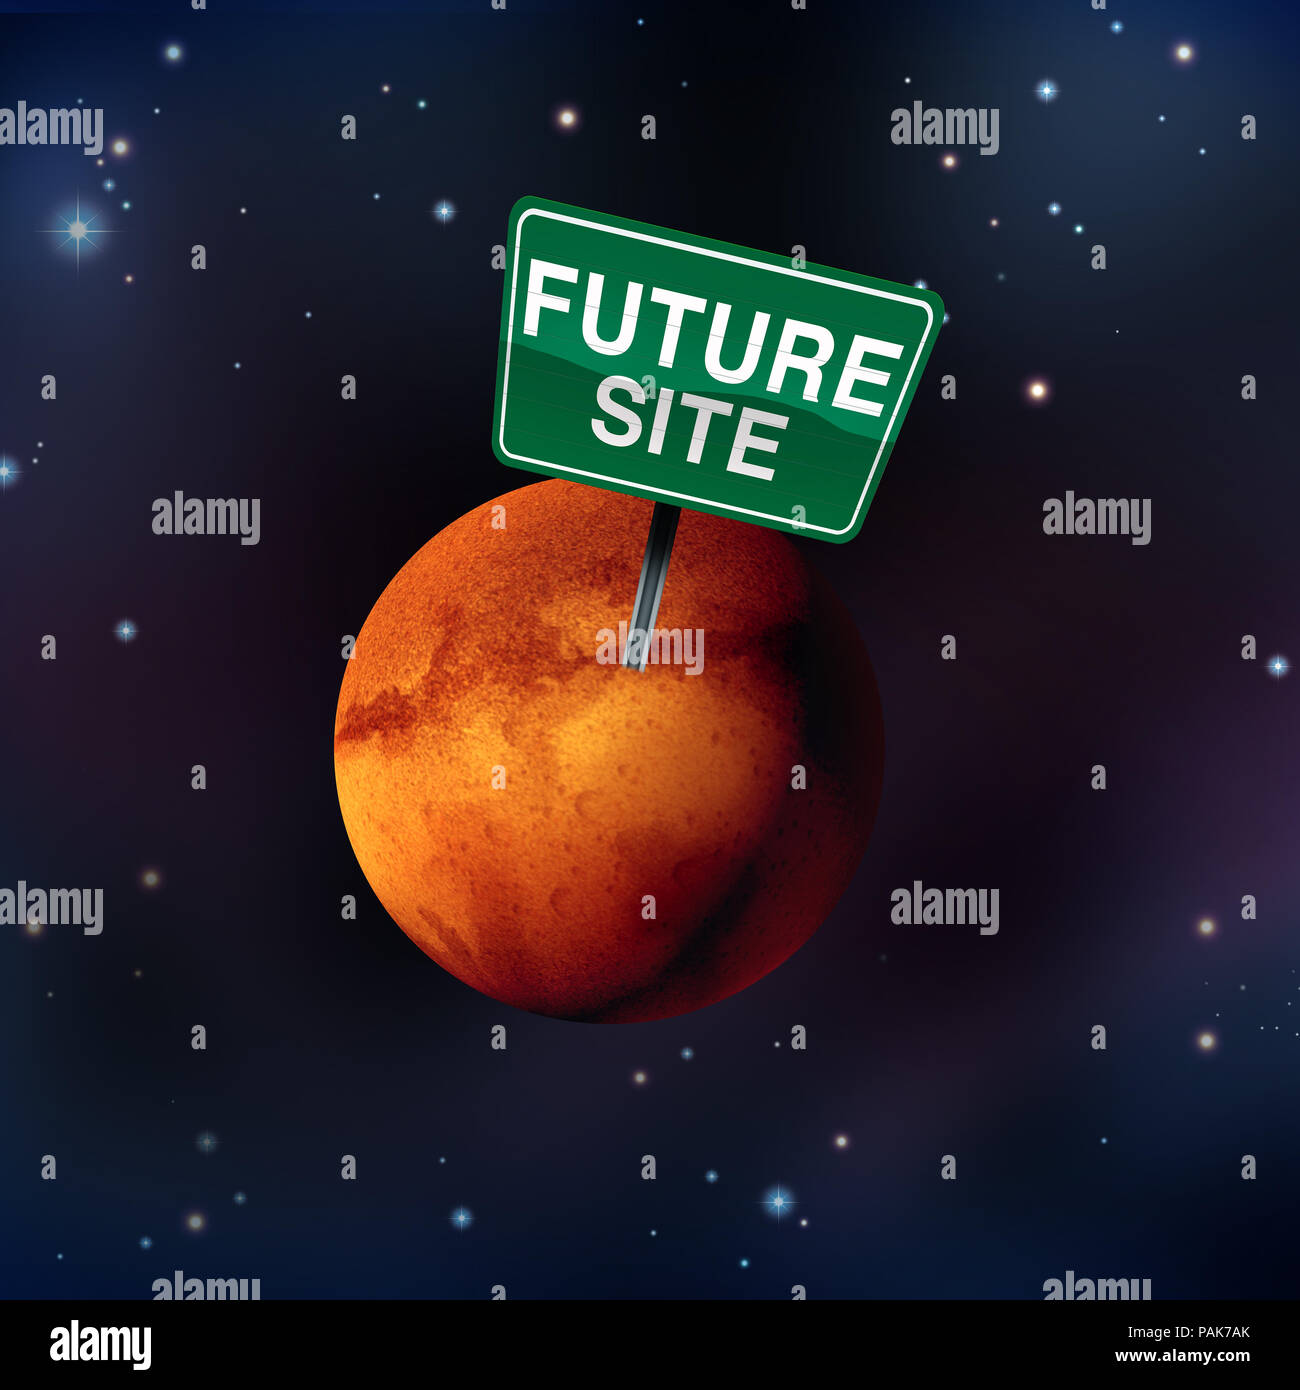 Leben auf dem Mars Konzept als zukünftige Mars Kolonie Website als Roter Planet Kolonisierung Astronomie Idee im Raum mit Sterne als 3D-Render. Stockfoto